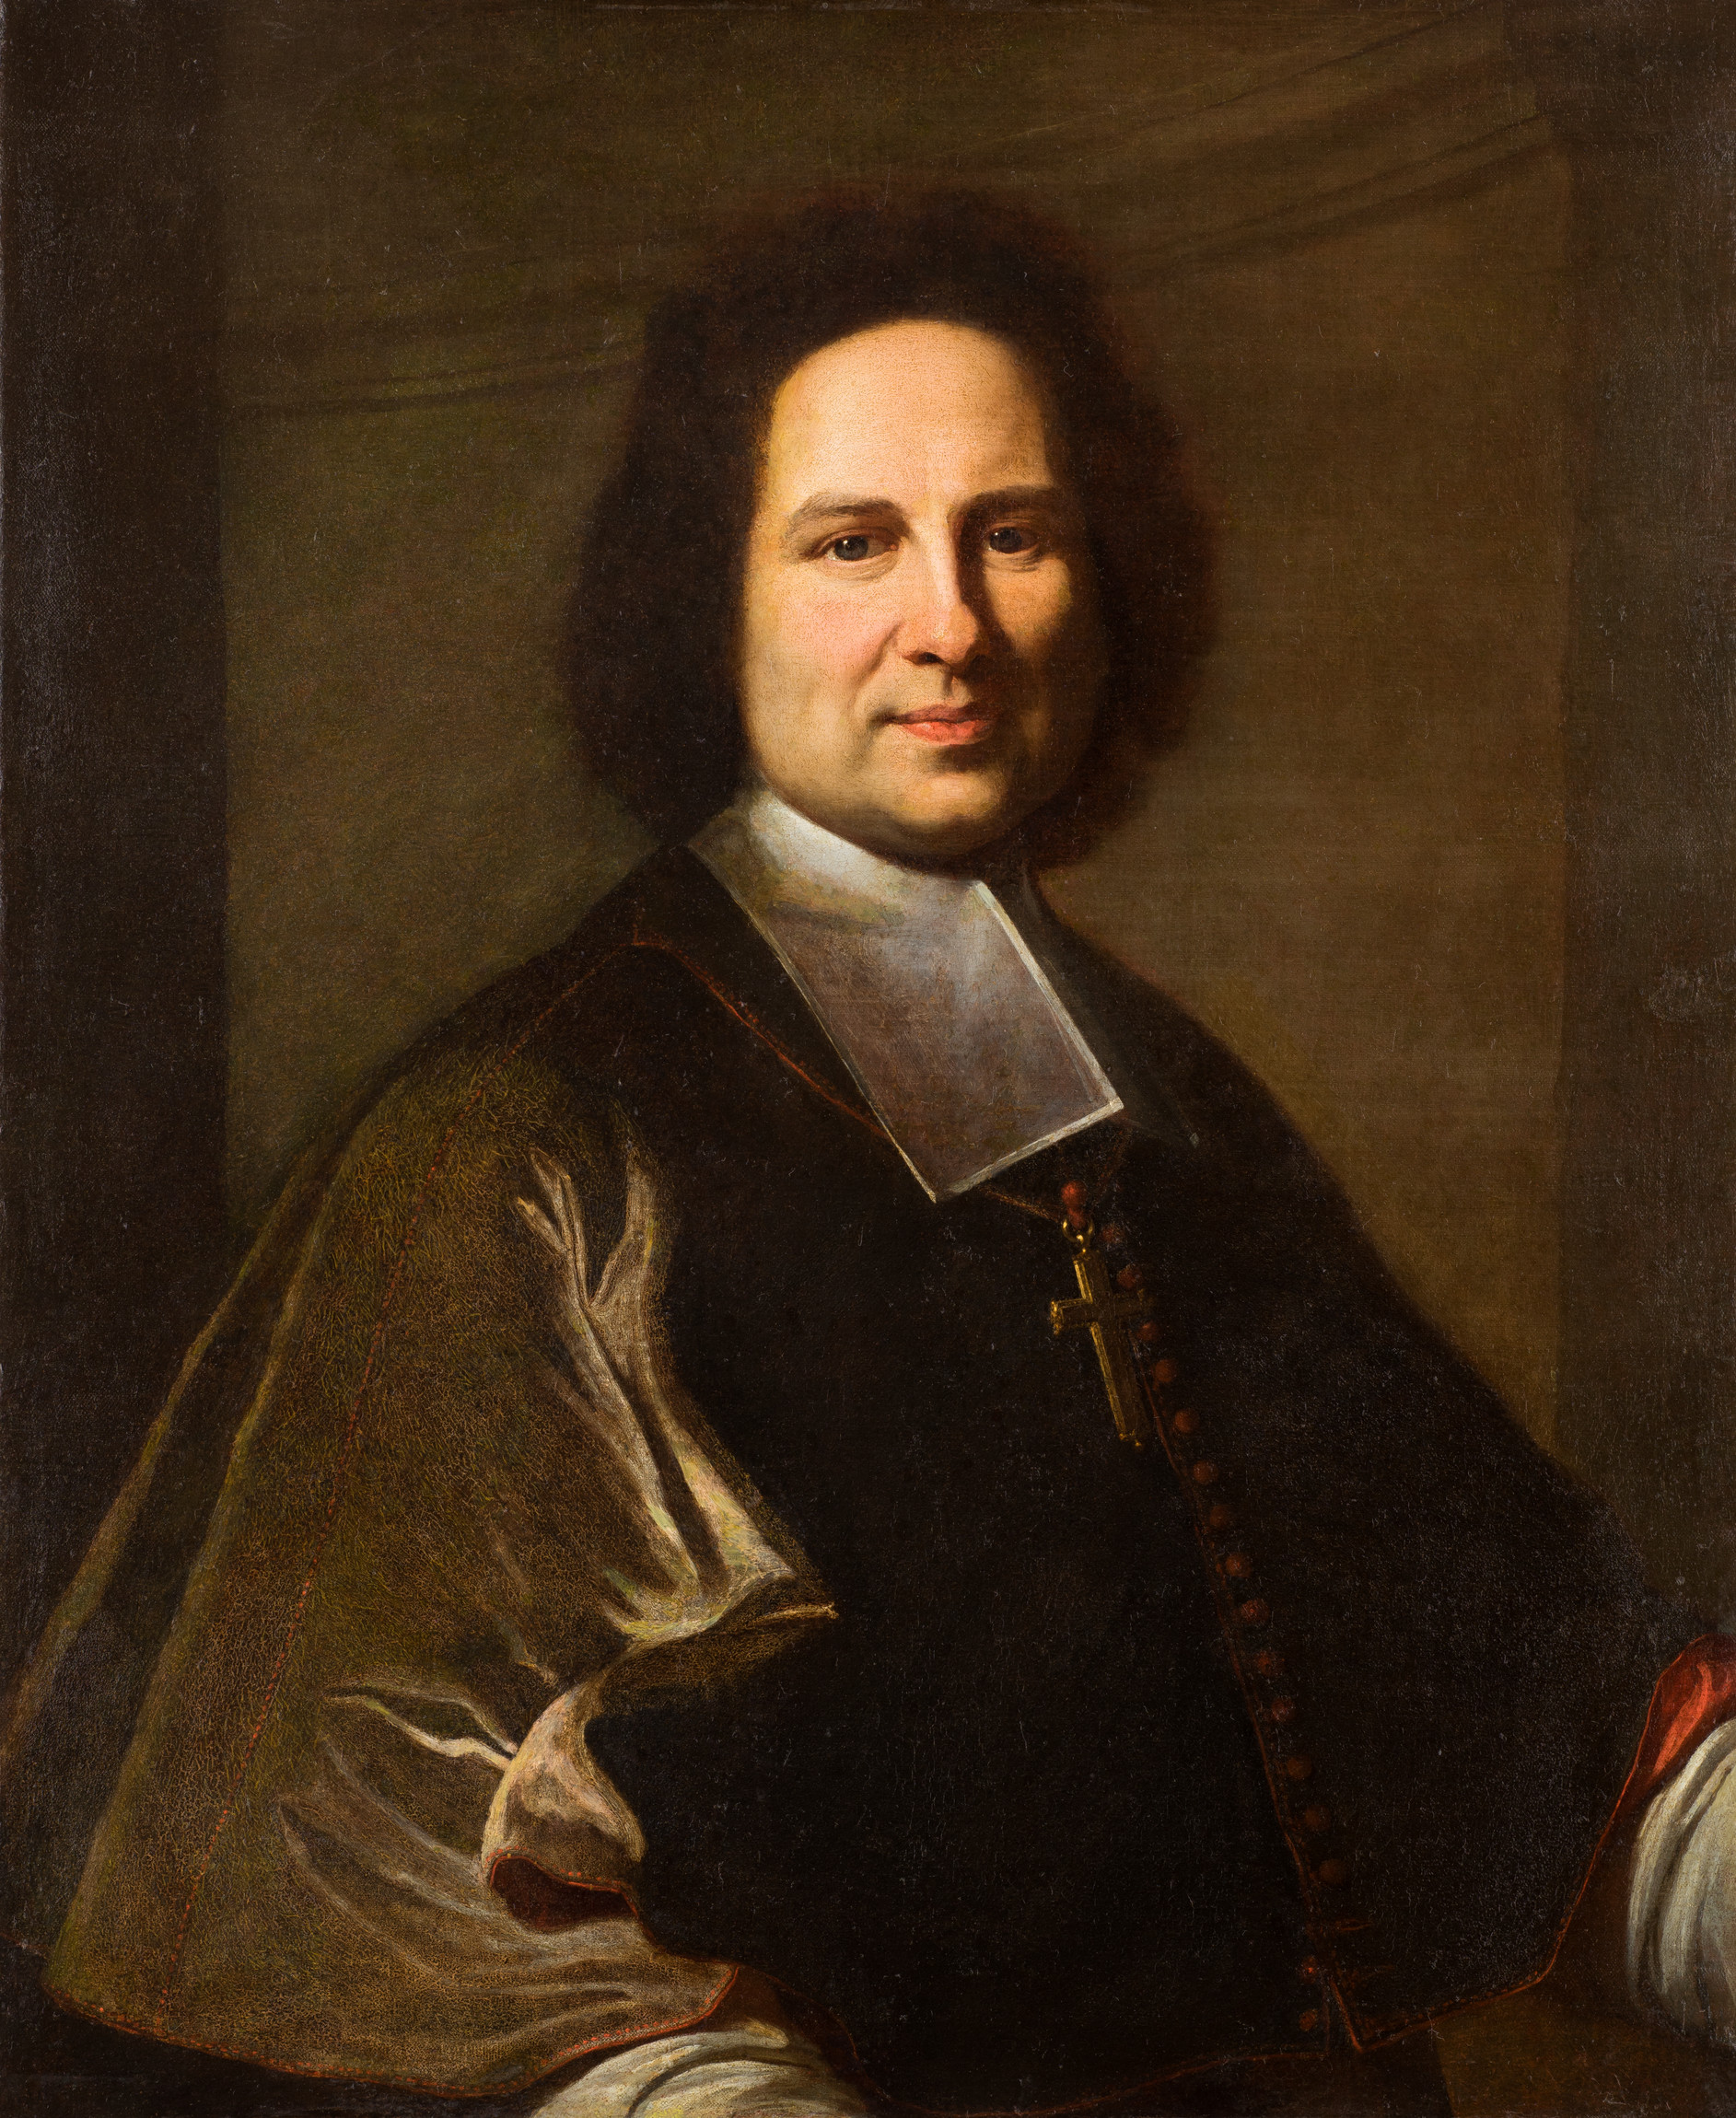 Portrait de Jean César Rousseau de La Parisière (1667-1736), évêque de Nîmes